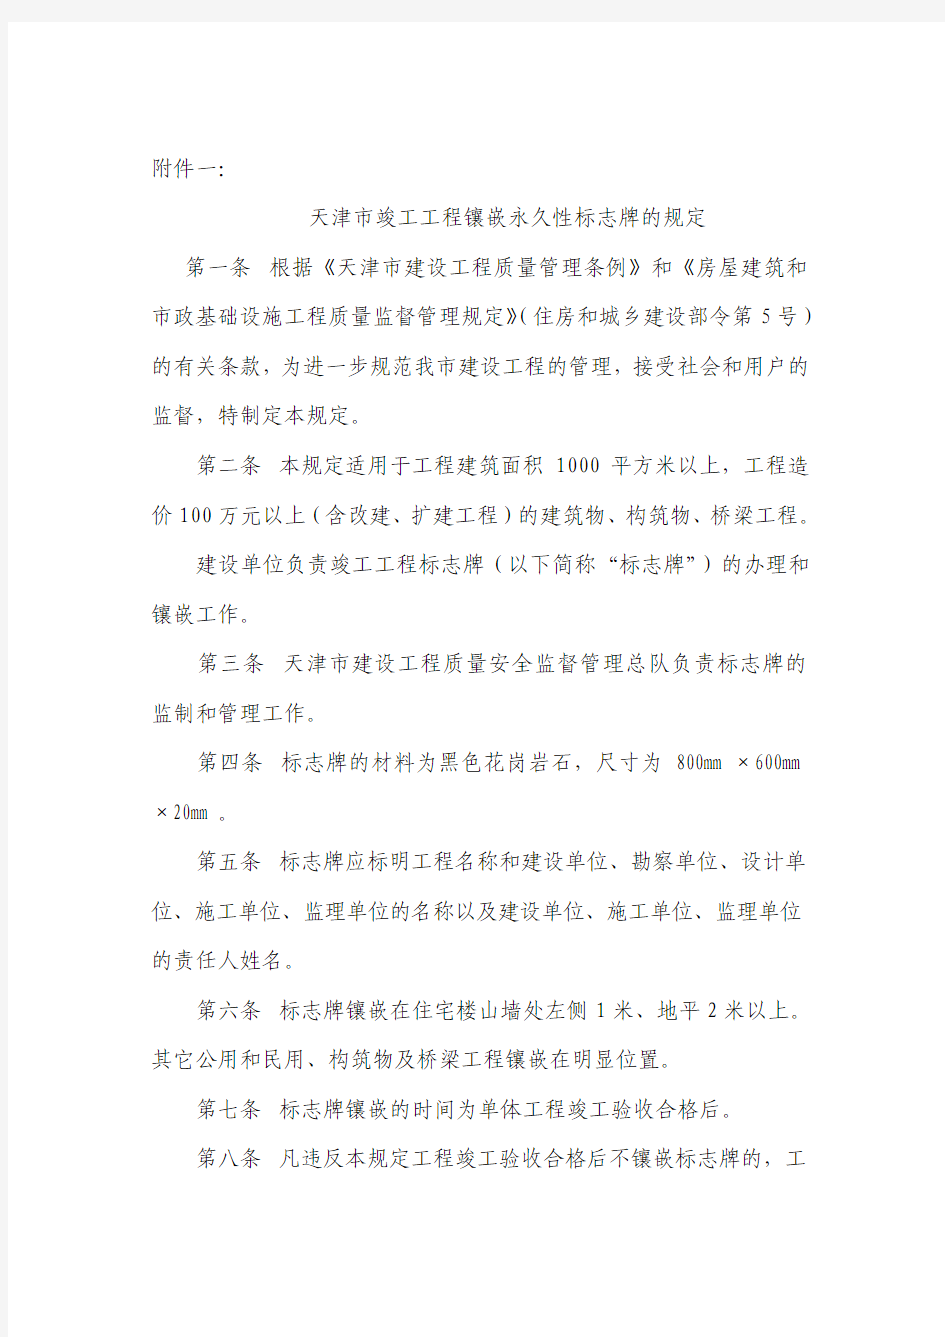 关于《天津市竣工工程镶嵌永久性标志牌的规定》和《实行住宅工程外窗淋水试验》的通知.doc2335330_FJ00